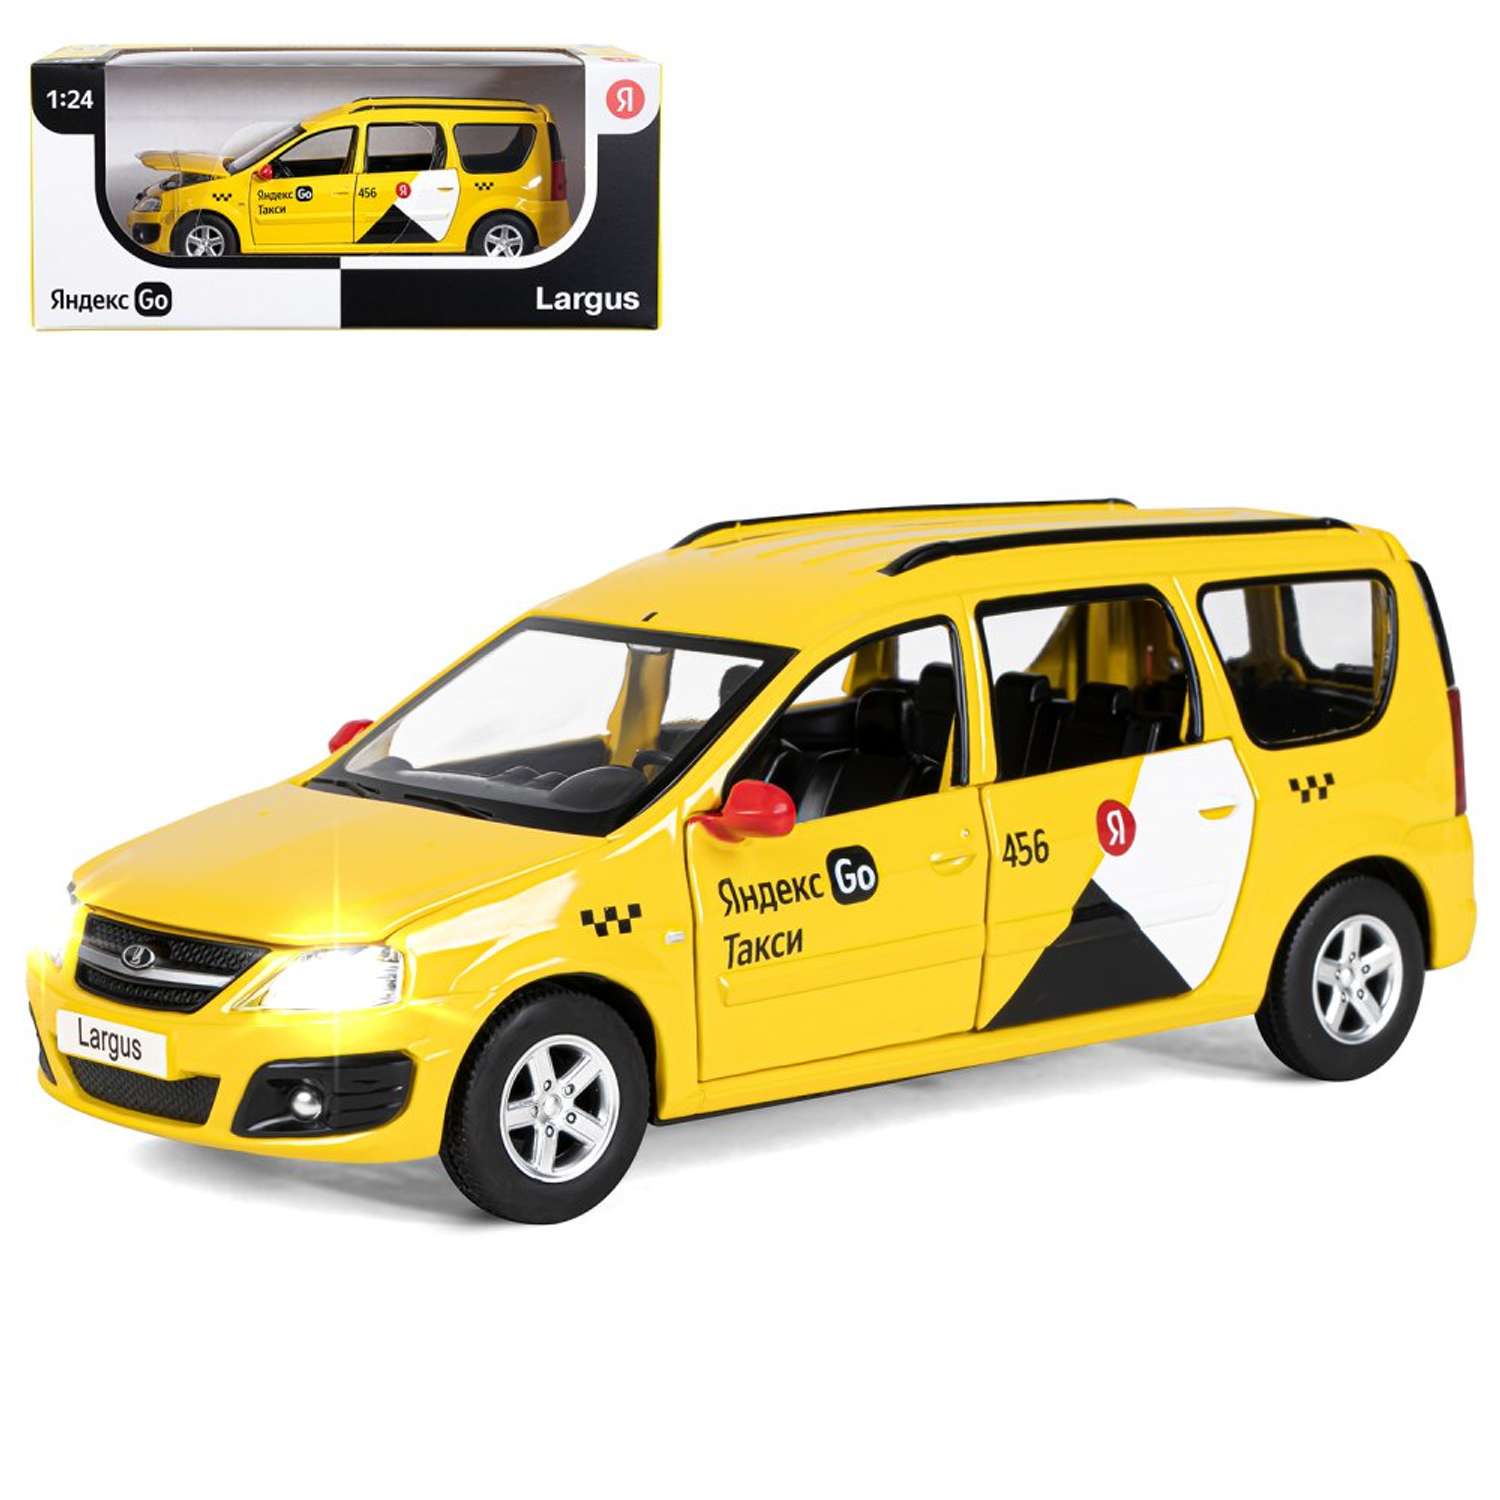 Машинка металлическая Яндекс GO игрушка детская LADA LARGUS 1:24 желтый Озвучено Алисой JB1251481 - фото 10